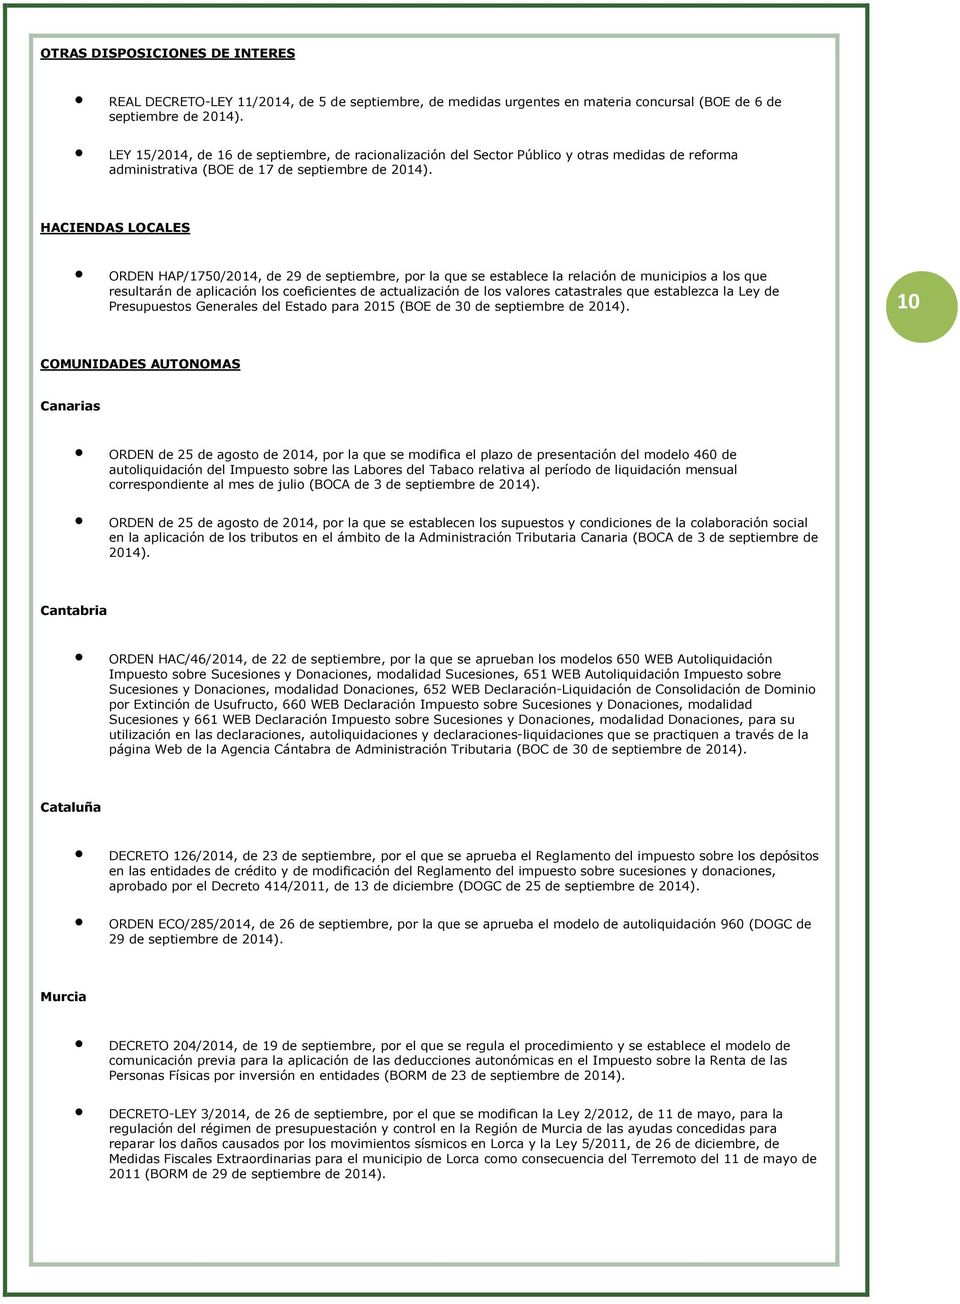 HACIENDAS LOCALES ORDEN HAP/1750/2014, de 29 de septiembre, pr la que se establece la relación de municipis a ls que resultarán de aplicación ls ceficientes de actualización de ls valres catastrales